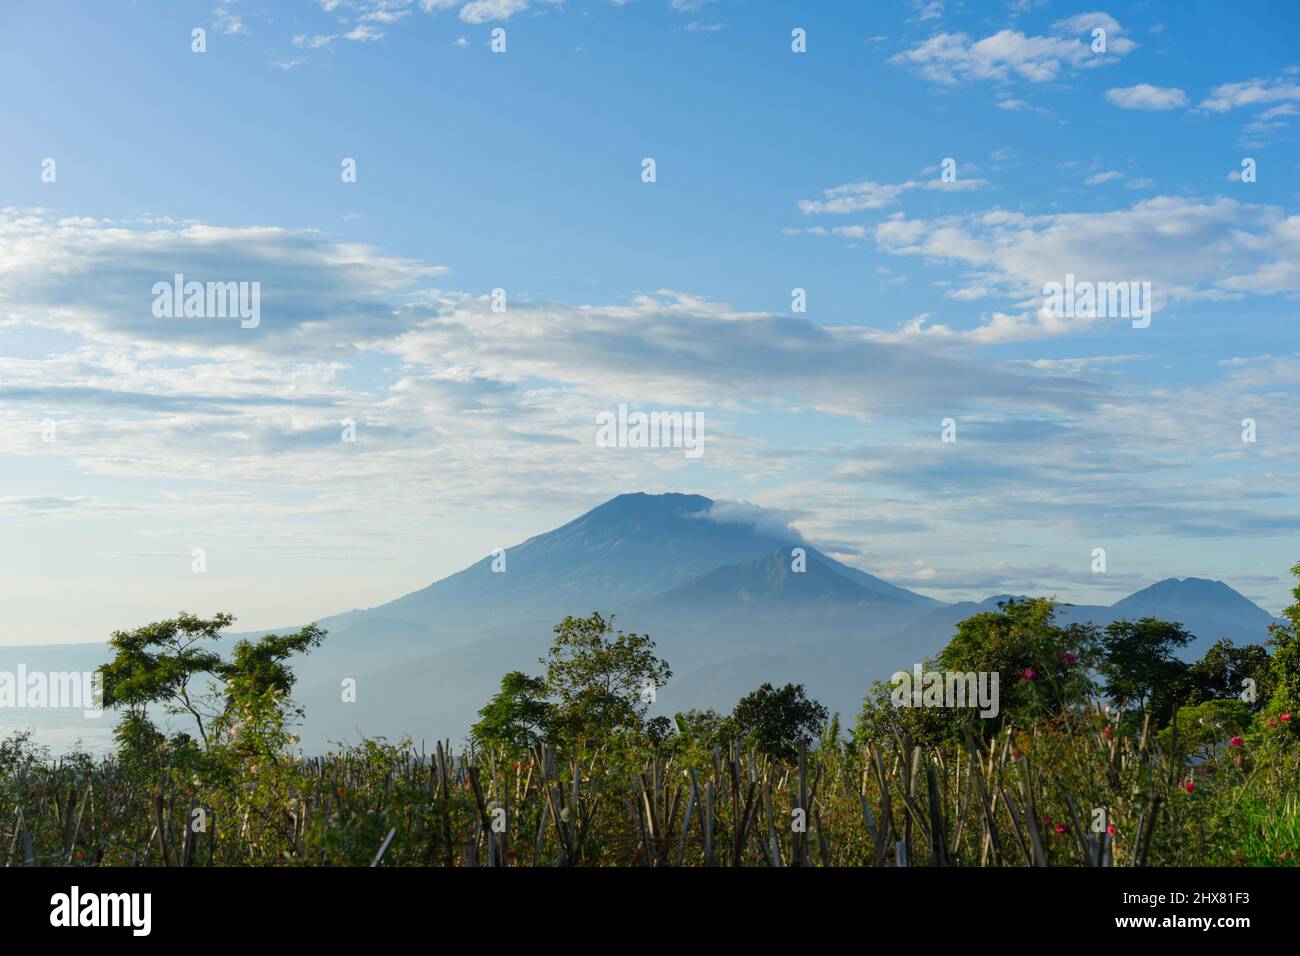 Questa è una fotografia del Monte Merbabu a Giava centrale, Indonesia. E 'il nome, 'Merbabu' significa 'montagna di cenere'. Foto Stock